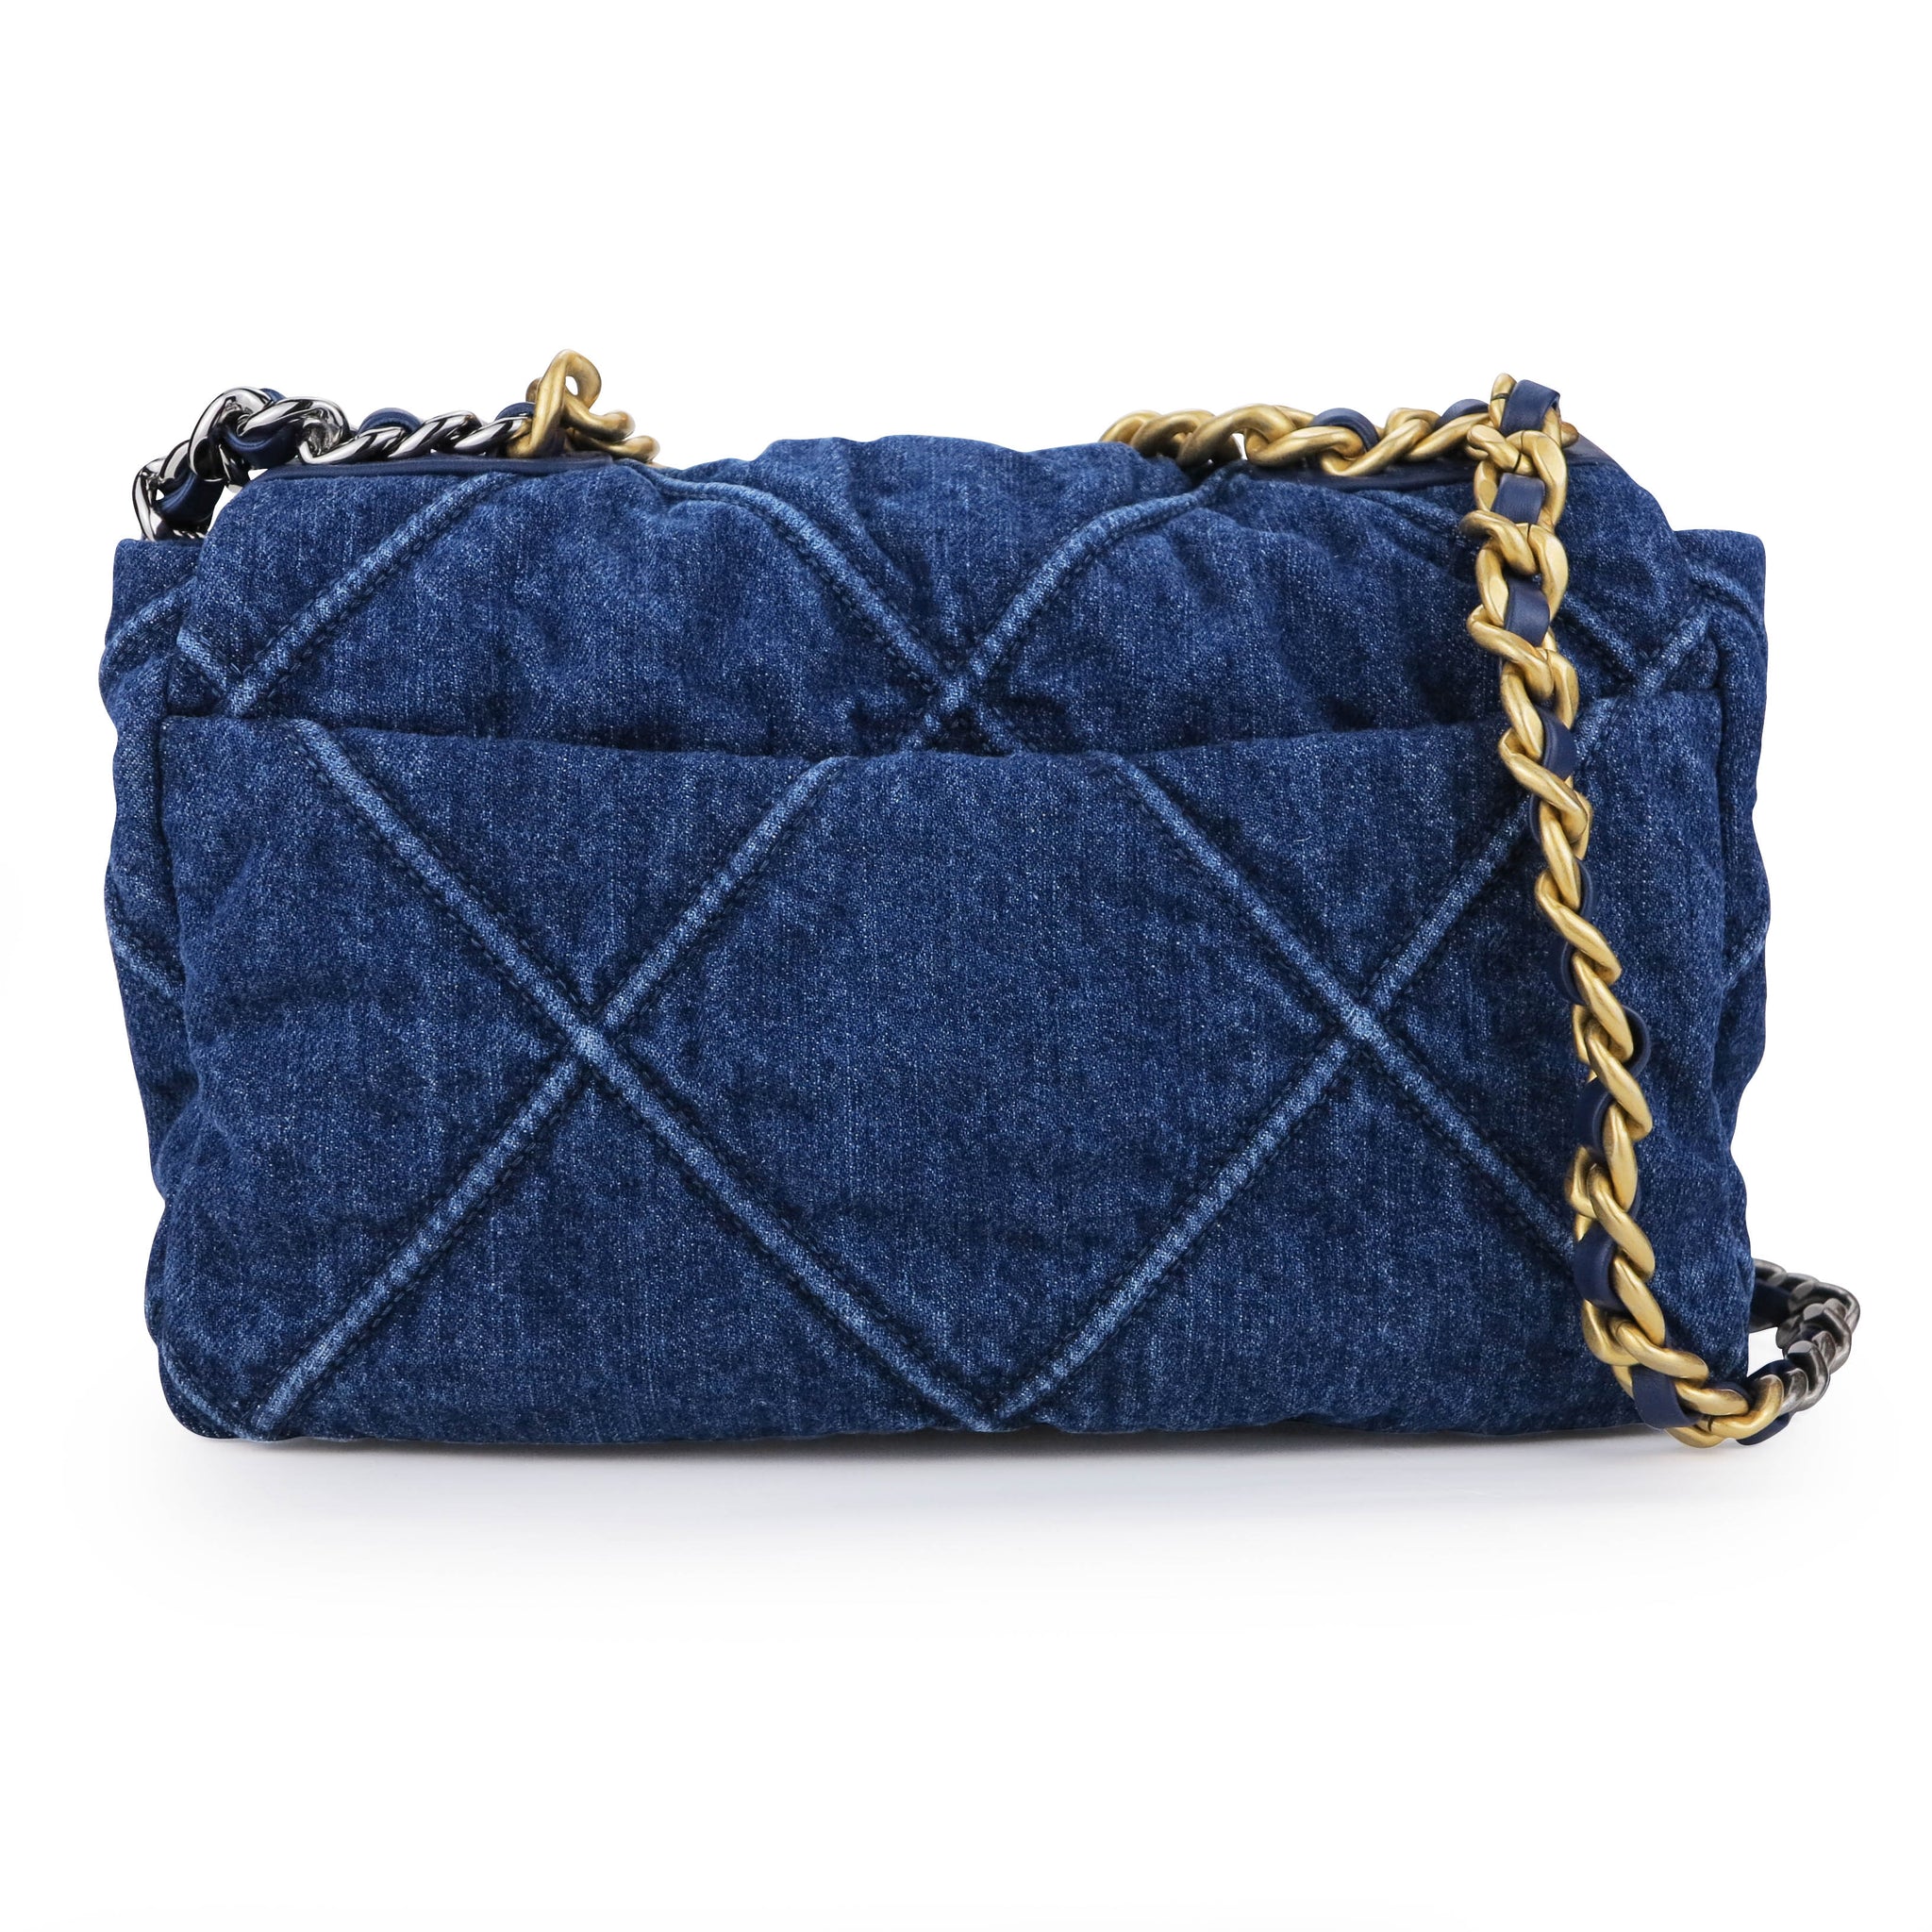 Chanel Blue Denim Quilted Medium Chanel 19 Bag  myGemma  Item 123012